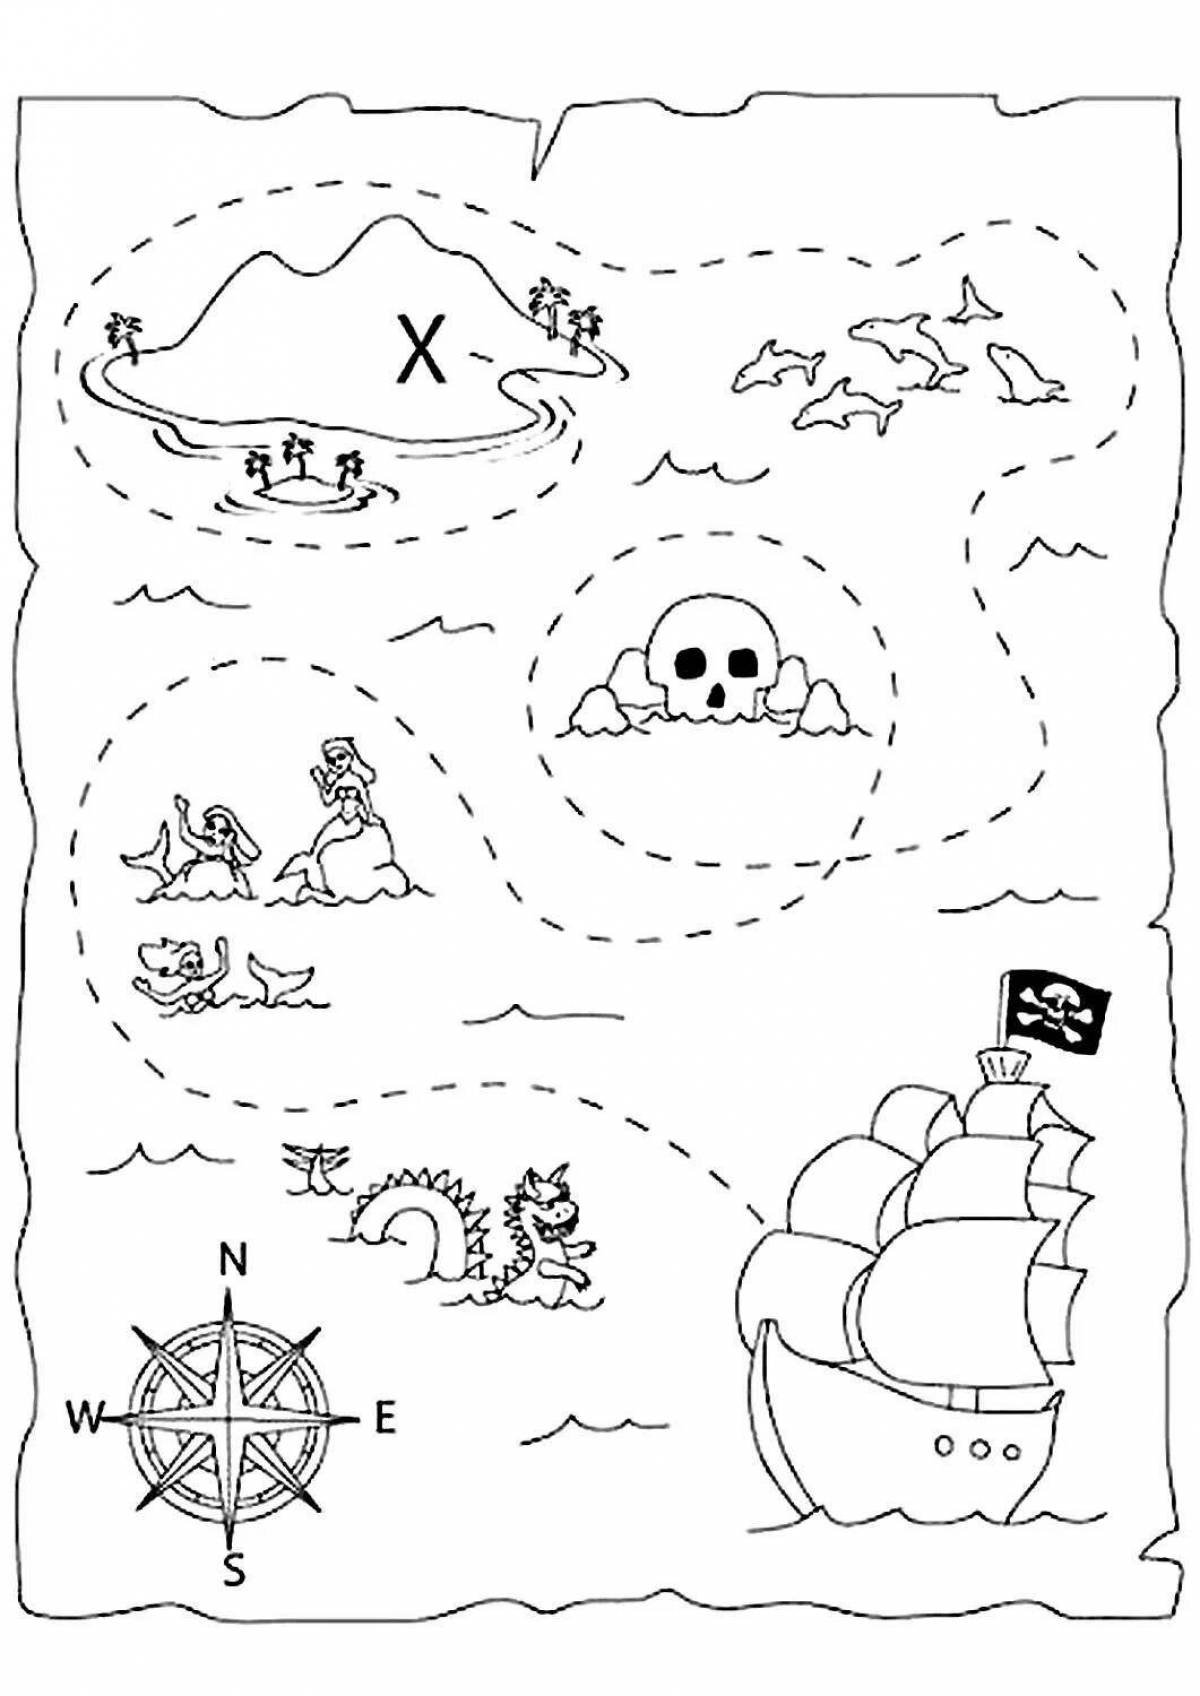 Идеи на тему «Пиратская» (16) | пиратские карты, карта сокровищ, карта